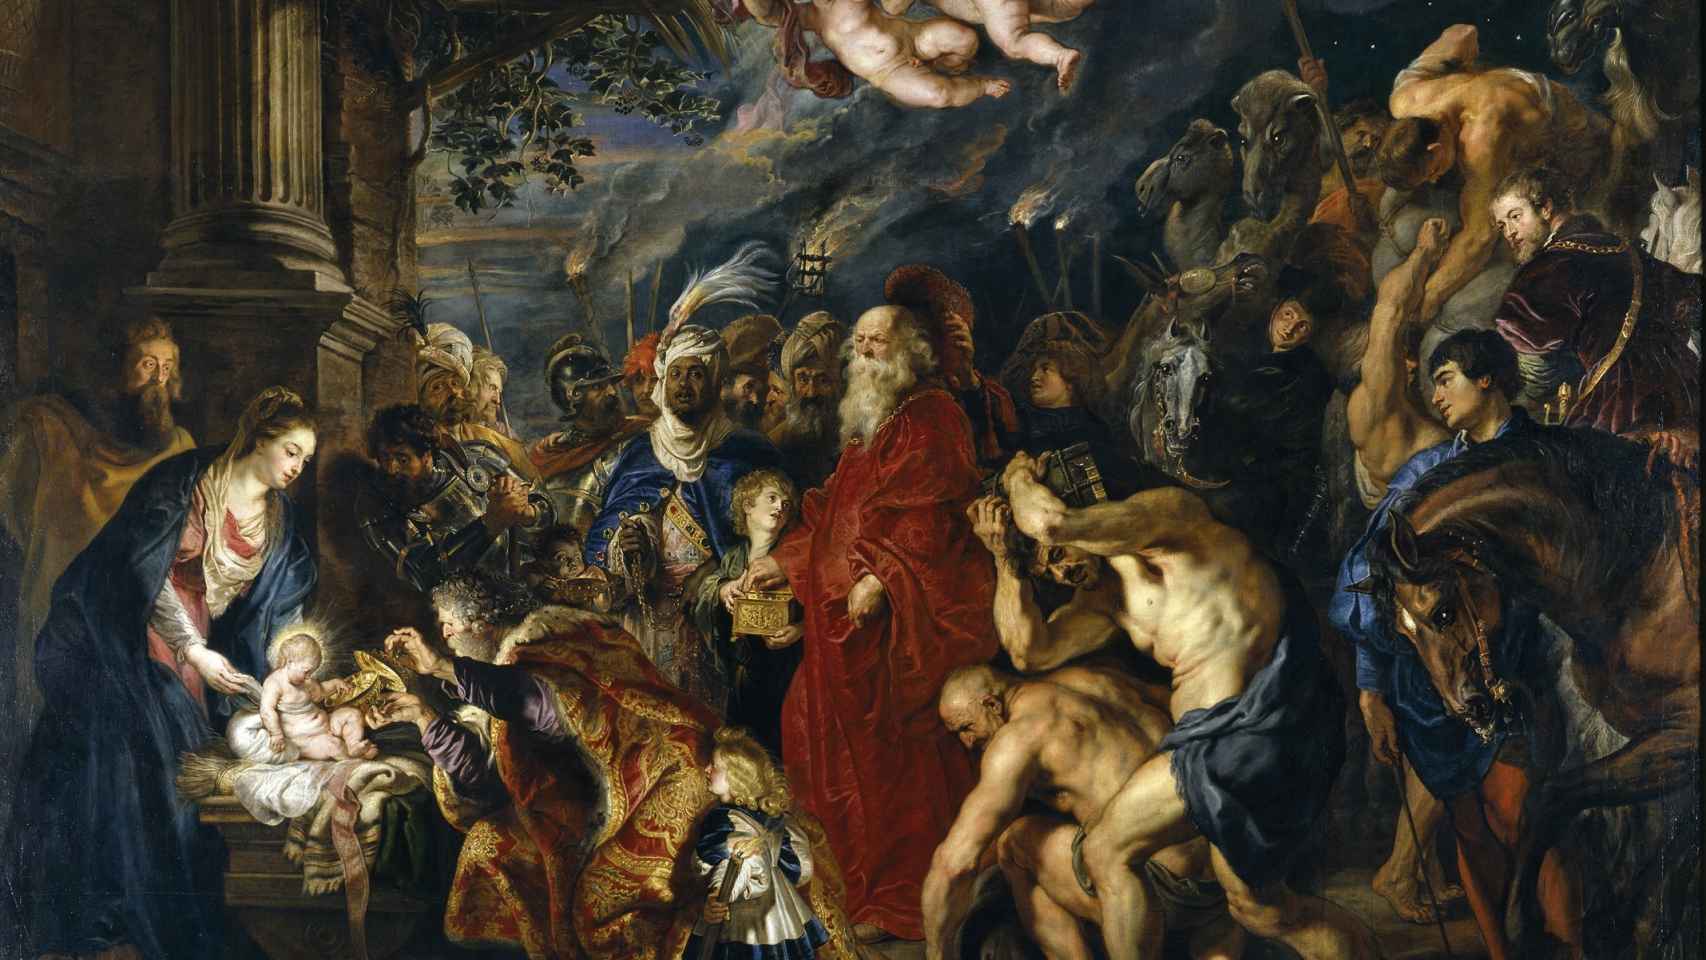 La adoración de los reyes magos. Rubens.